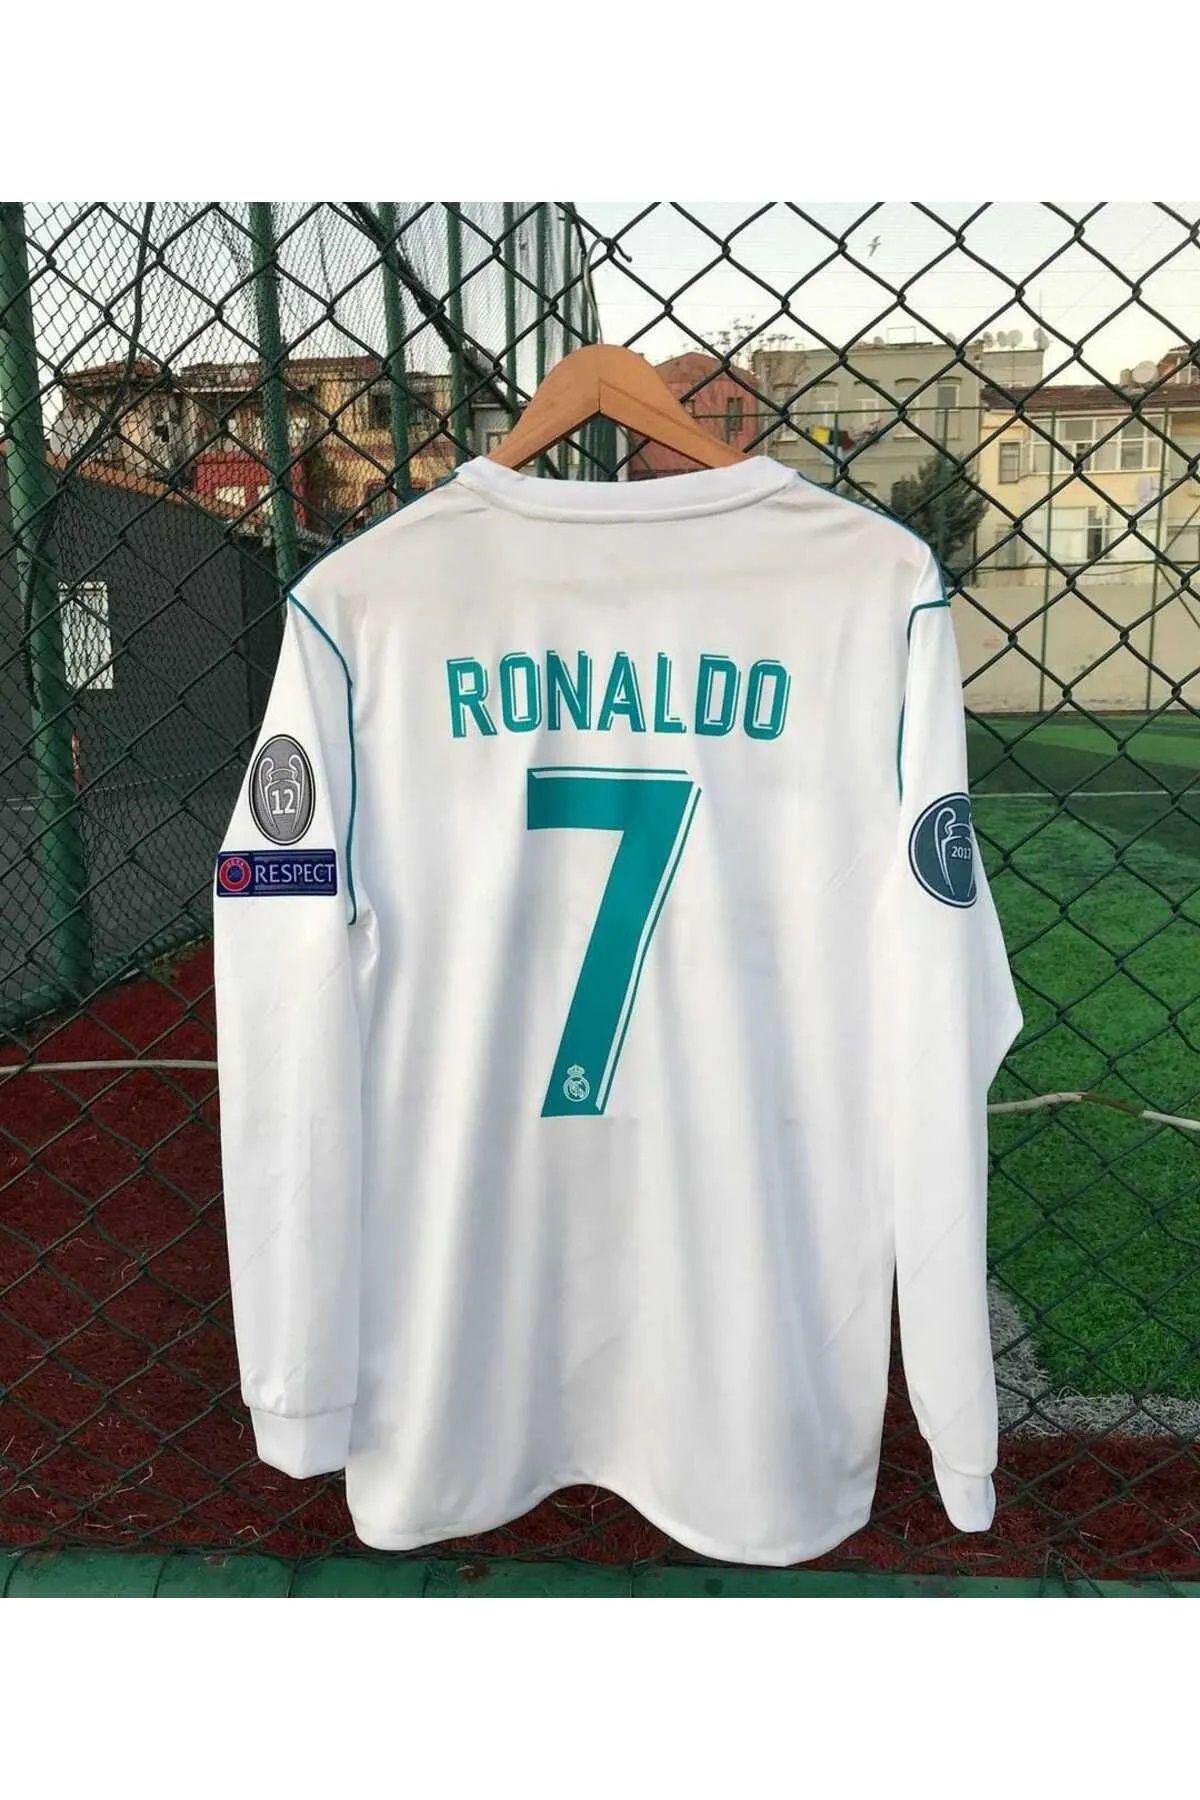 ZİLONG Real Madrid Ronaldo 2018 Kiev Şampiyonlar Ligi Final Uzun Kollu Yetişkin Futbol Forması